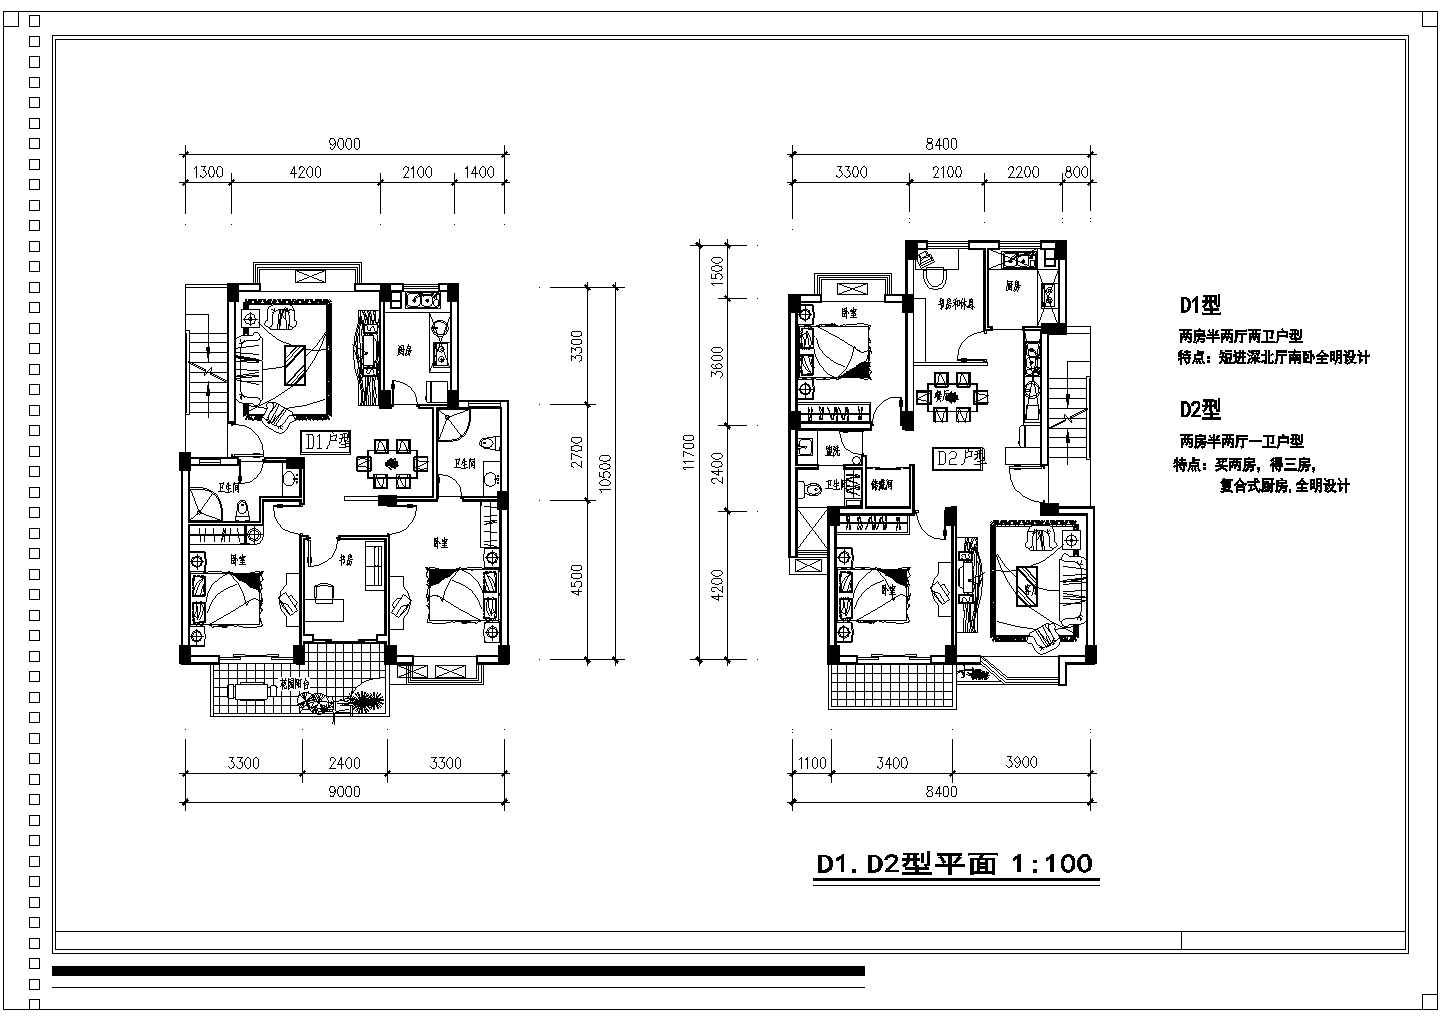 锦州某住宅规划设计施工图纸